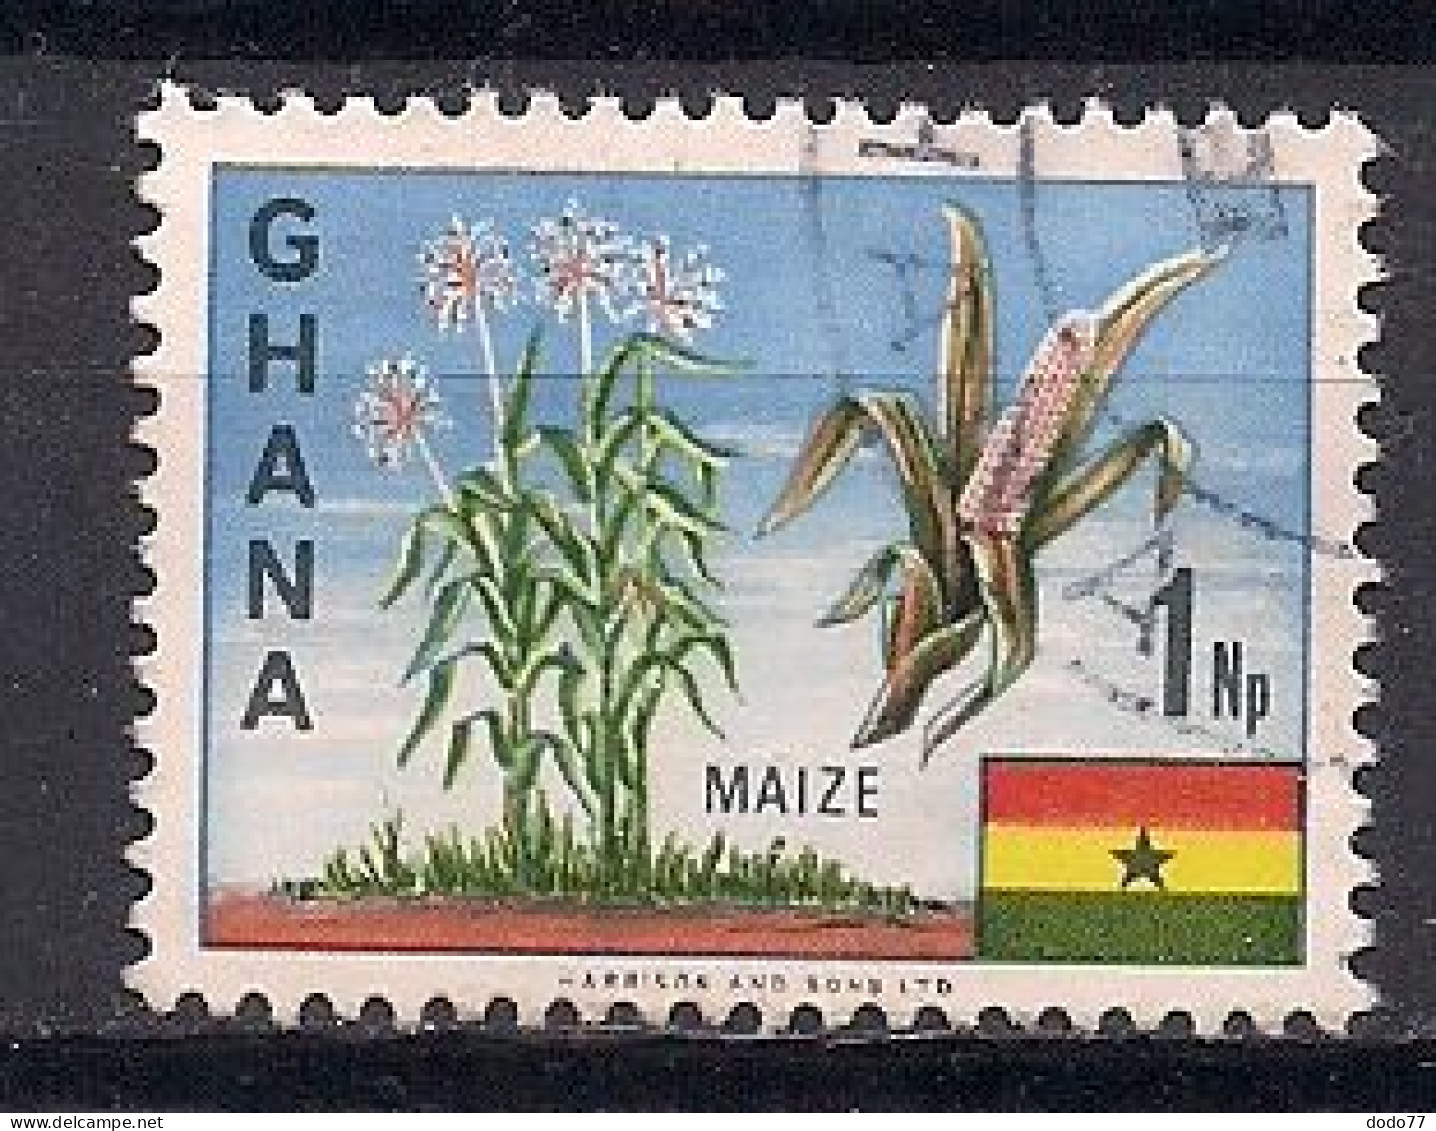 GHANA    OBLITERE - Ghana (1957-...)